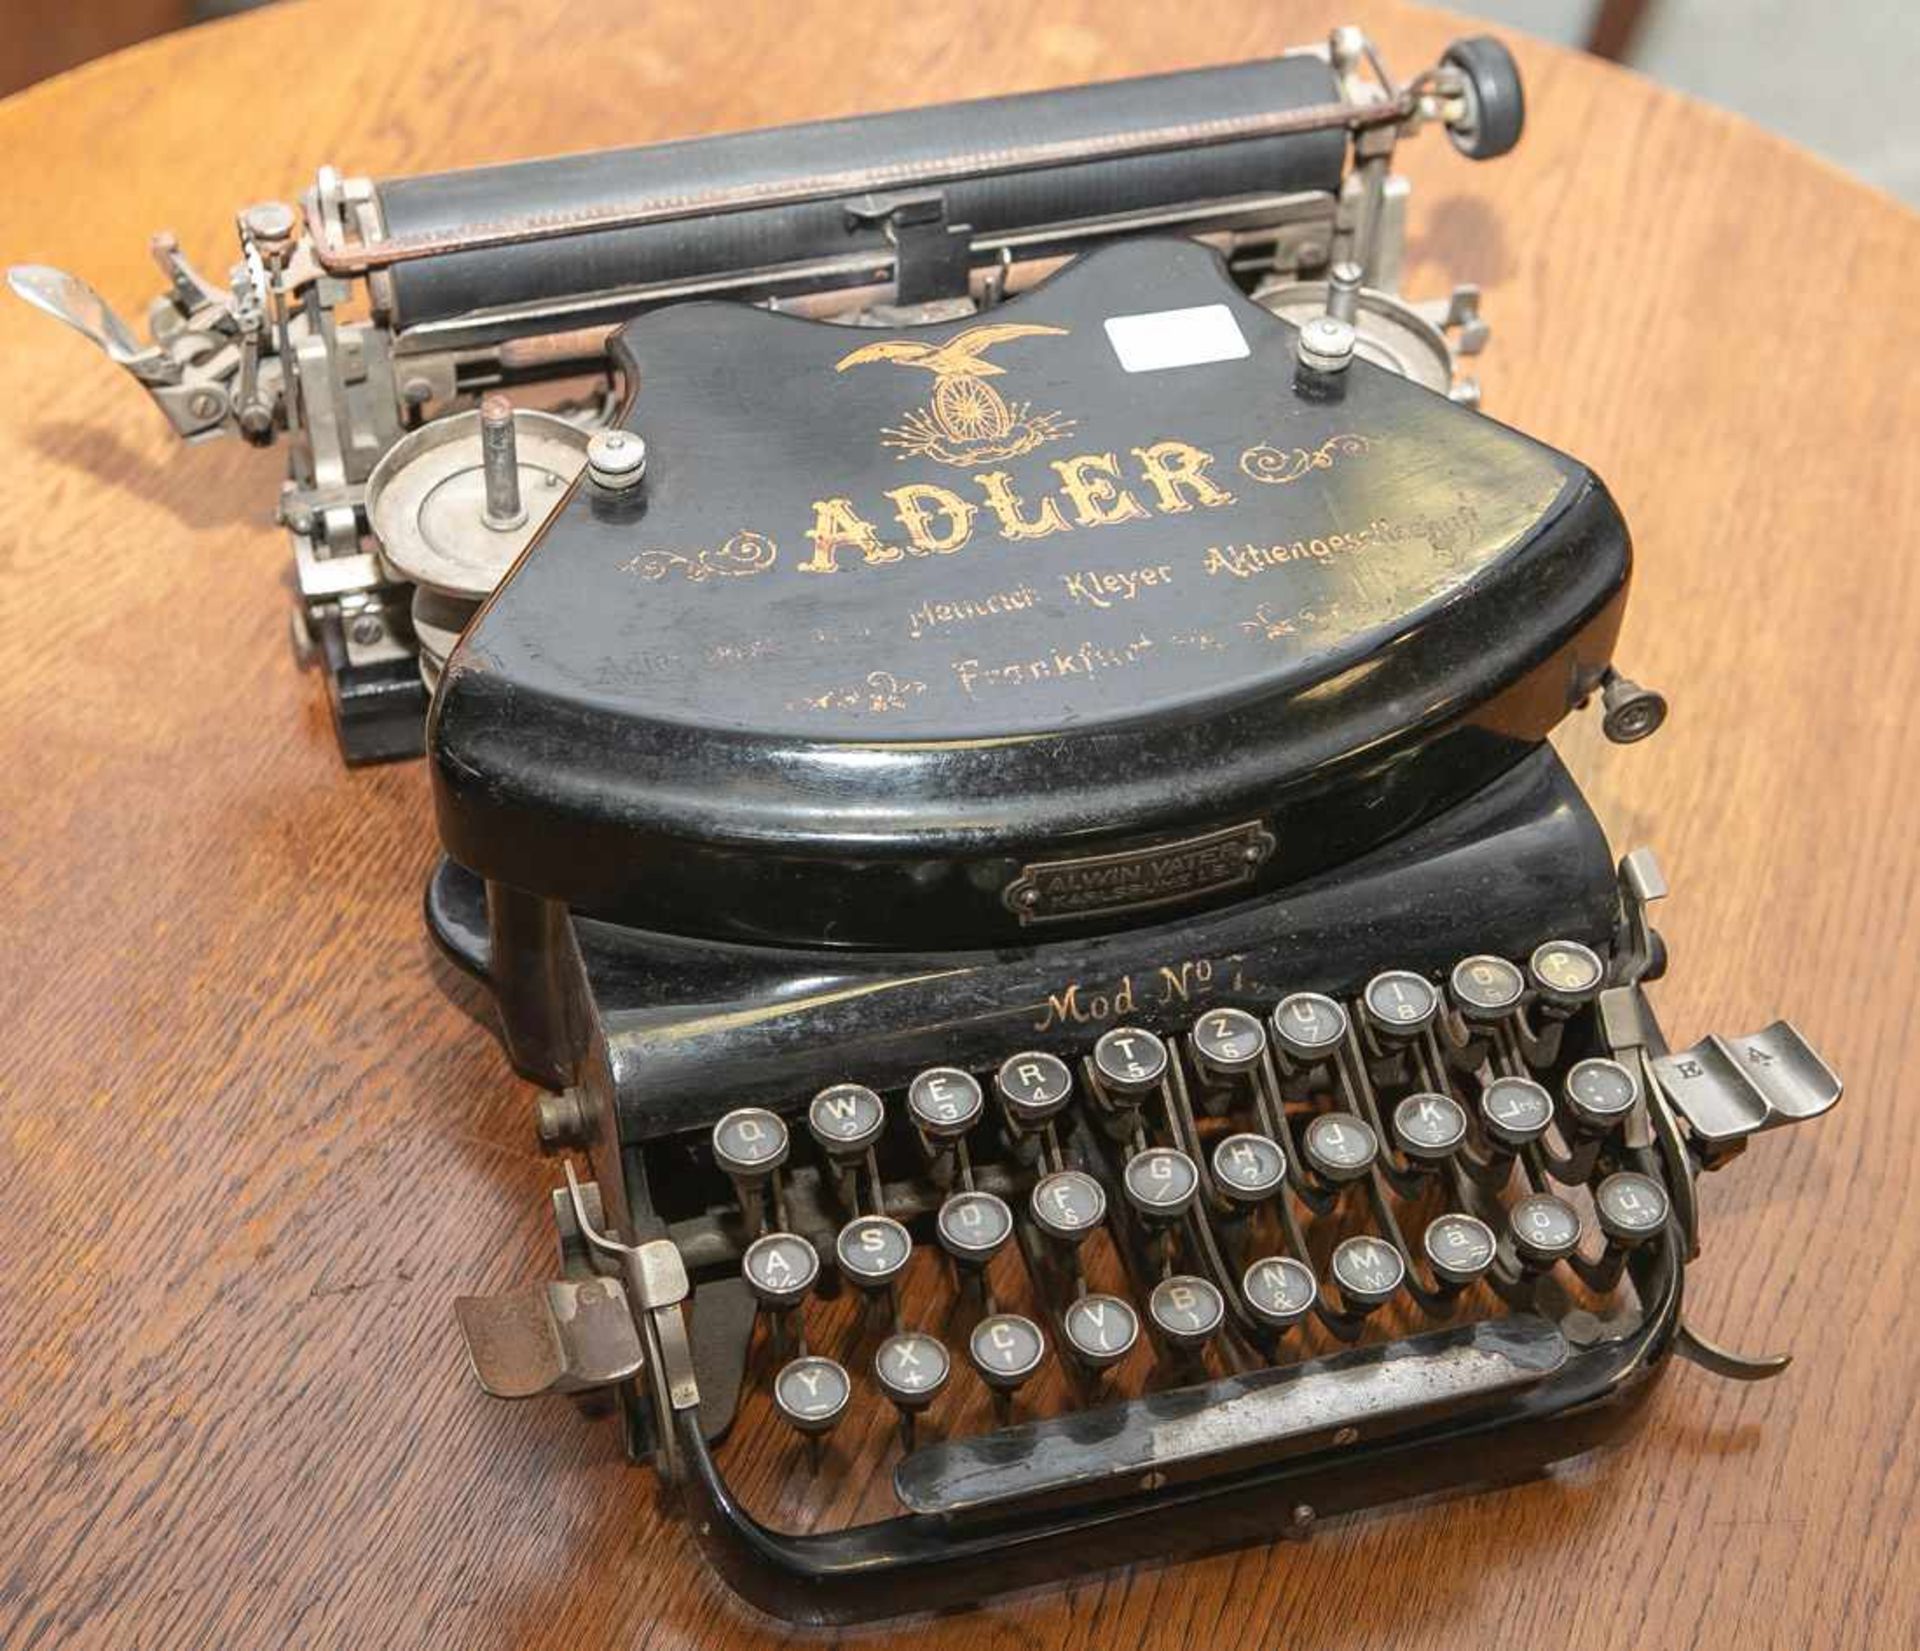 Alte Adler Schreibmaschine, Mod. No. 7, Heinrich Kleyer Aktiengesellschaft -Frankfurt/Main.